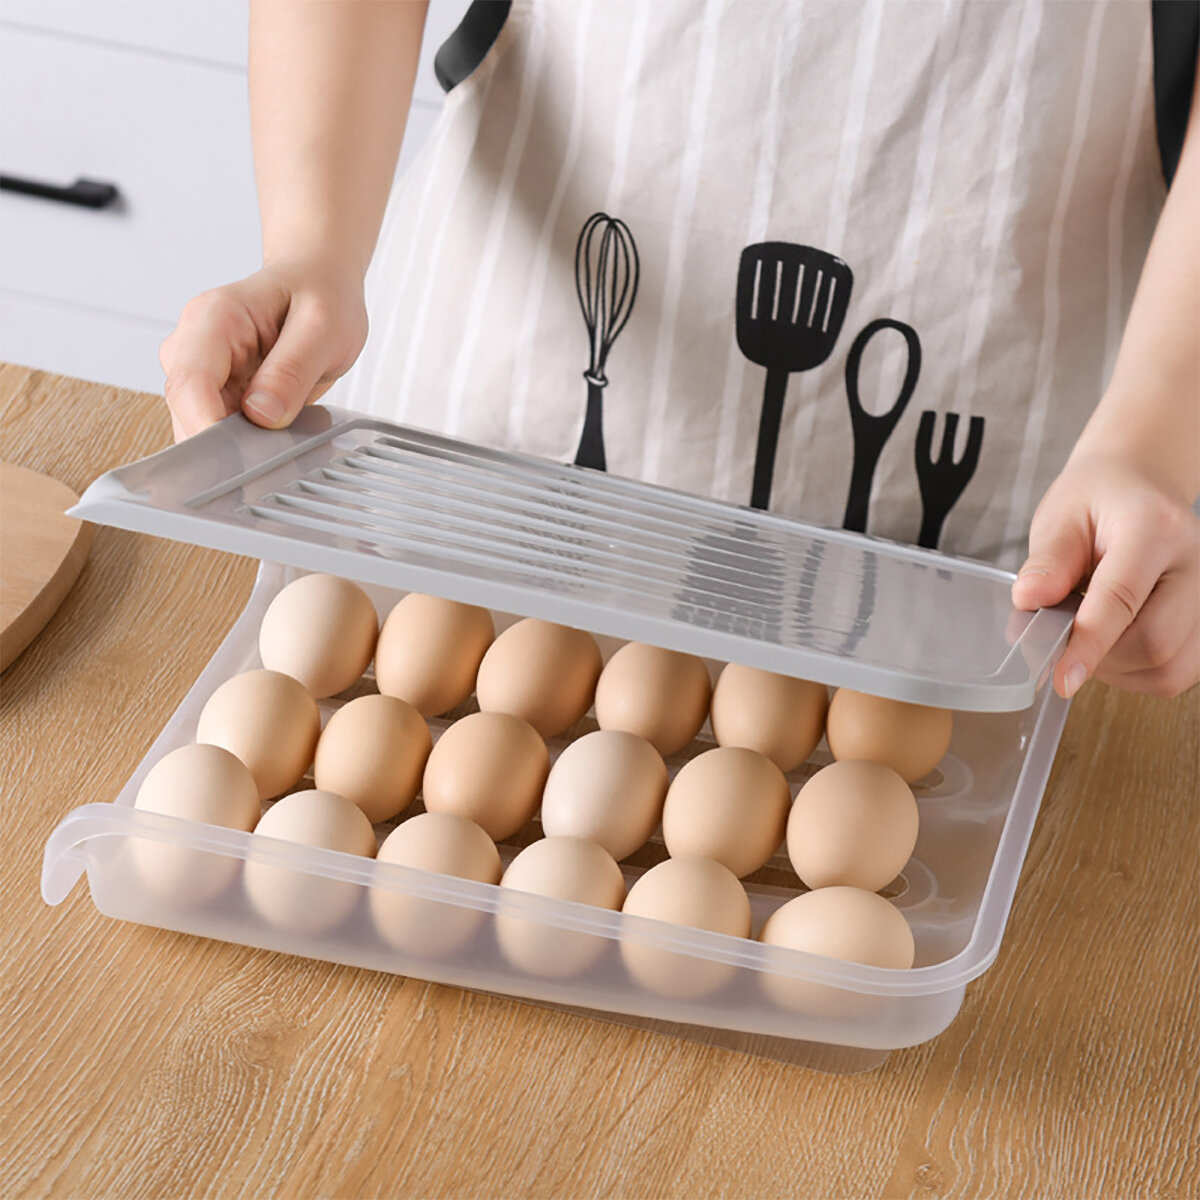 Αποθήκευση αυγών κουζίνας στοίβαξης και φορητή με χωρητικότητα 18 αυγών, με κάγκελα, ανθεκτική στη σκόνη και για τον καταψύκτη